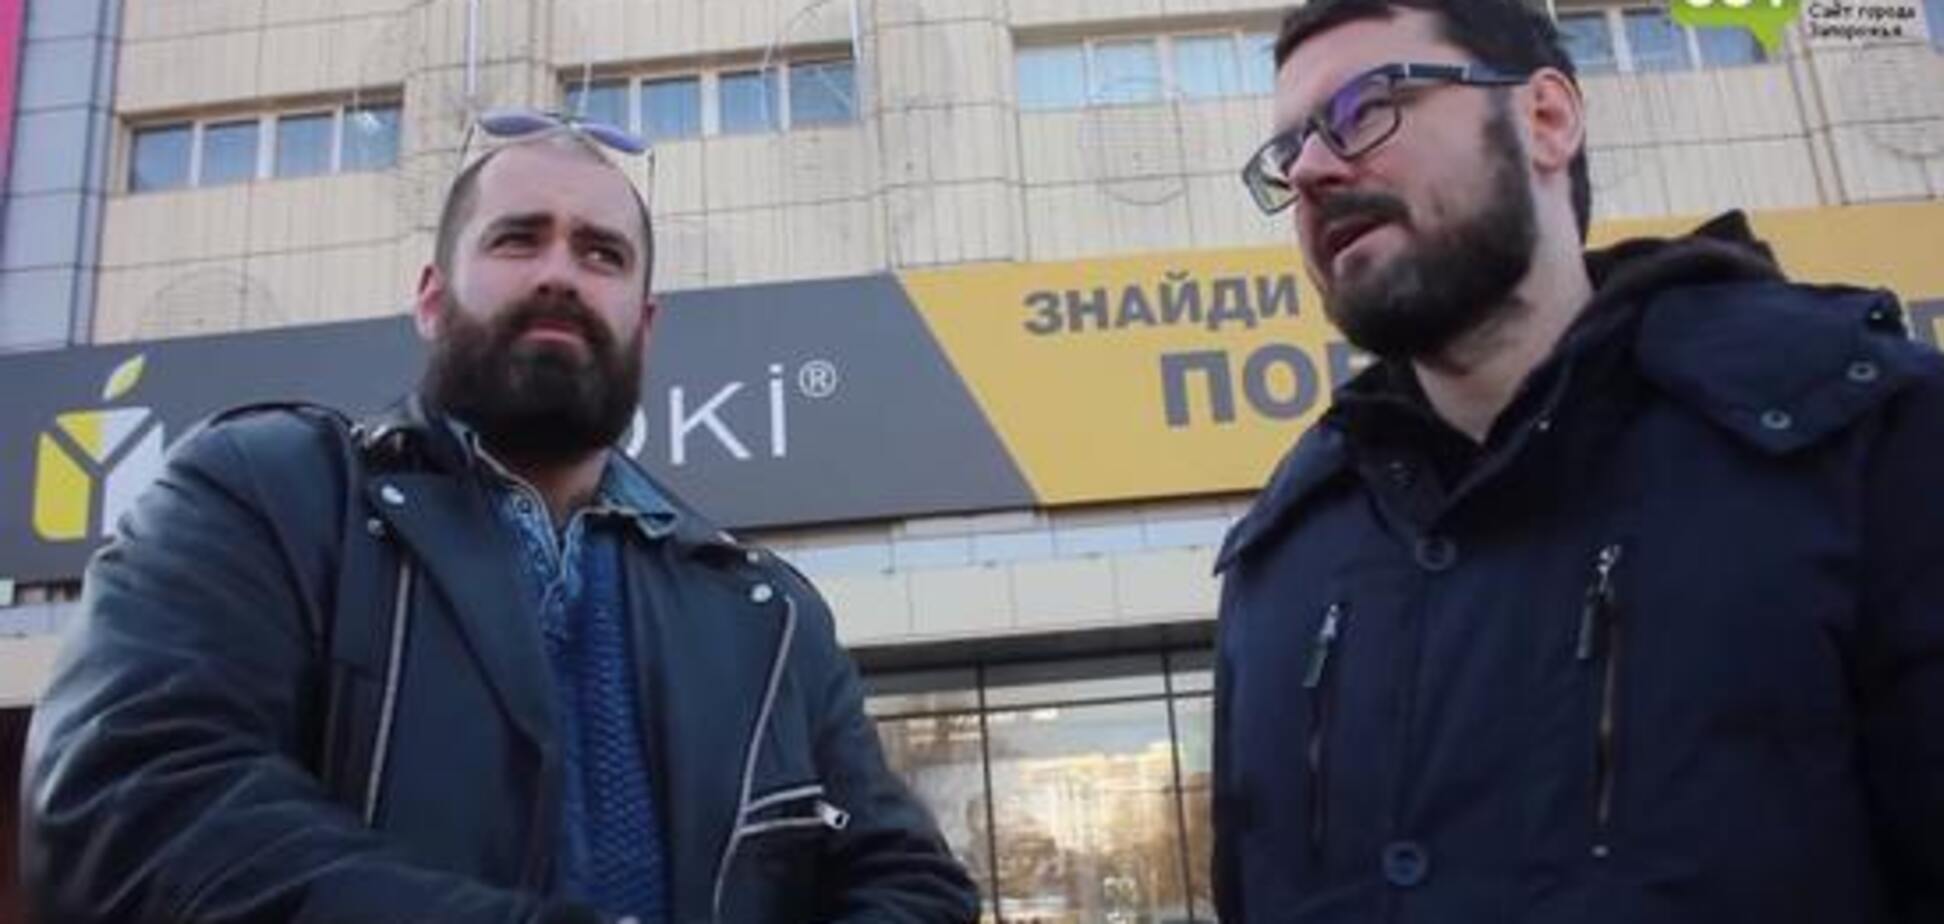 'Бомбити його!' Українці розповіли, хто винен у війні на Донбасі